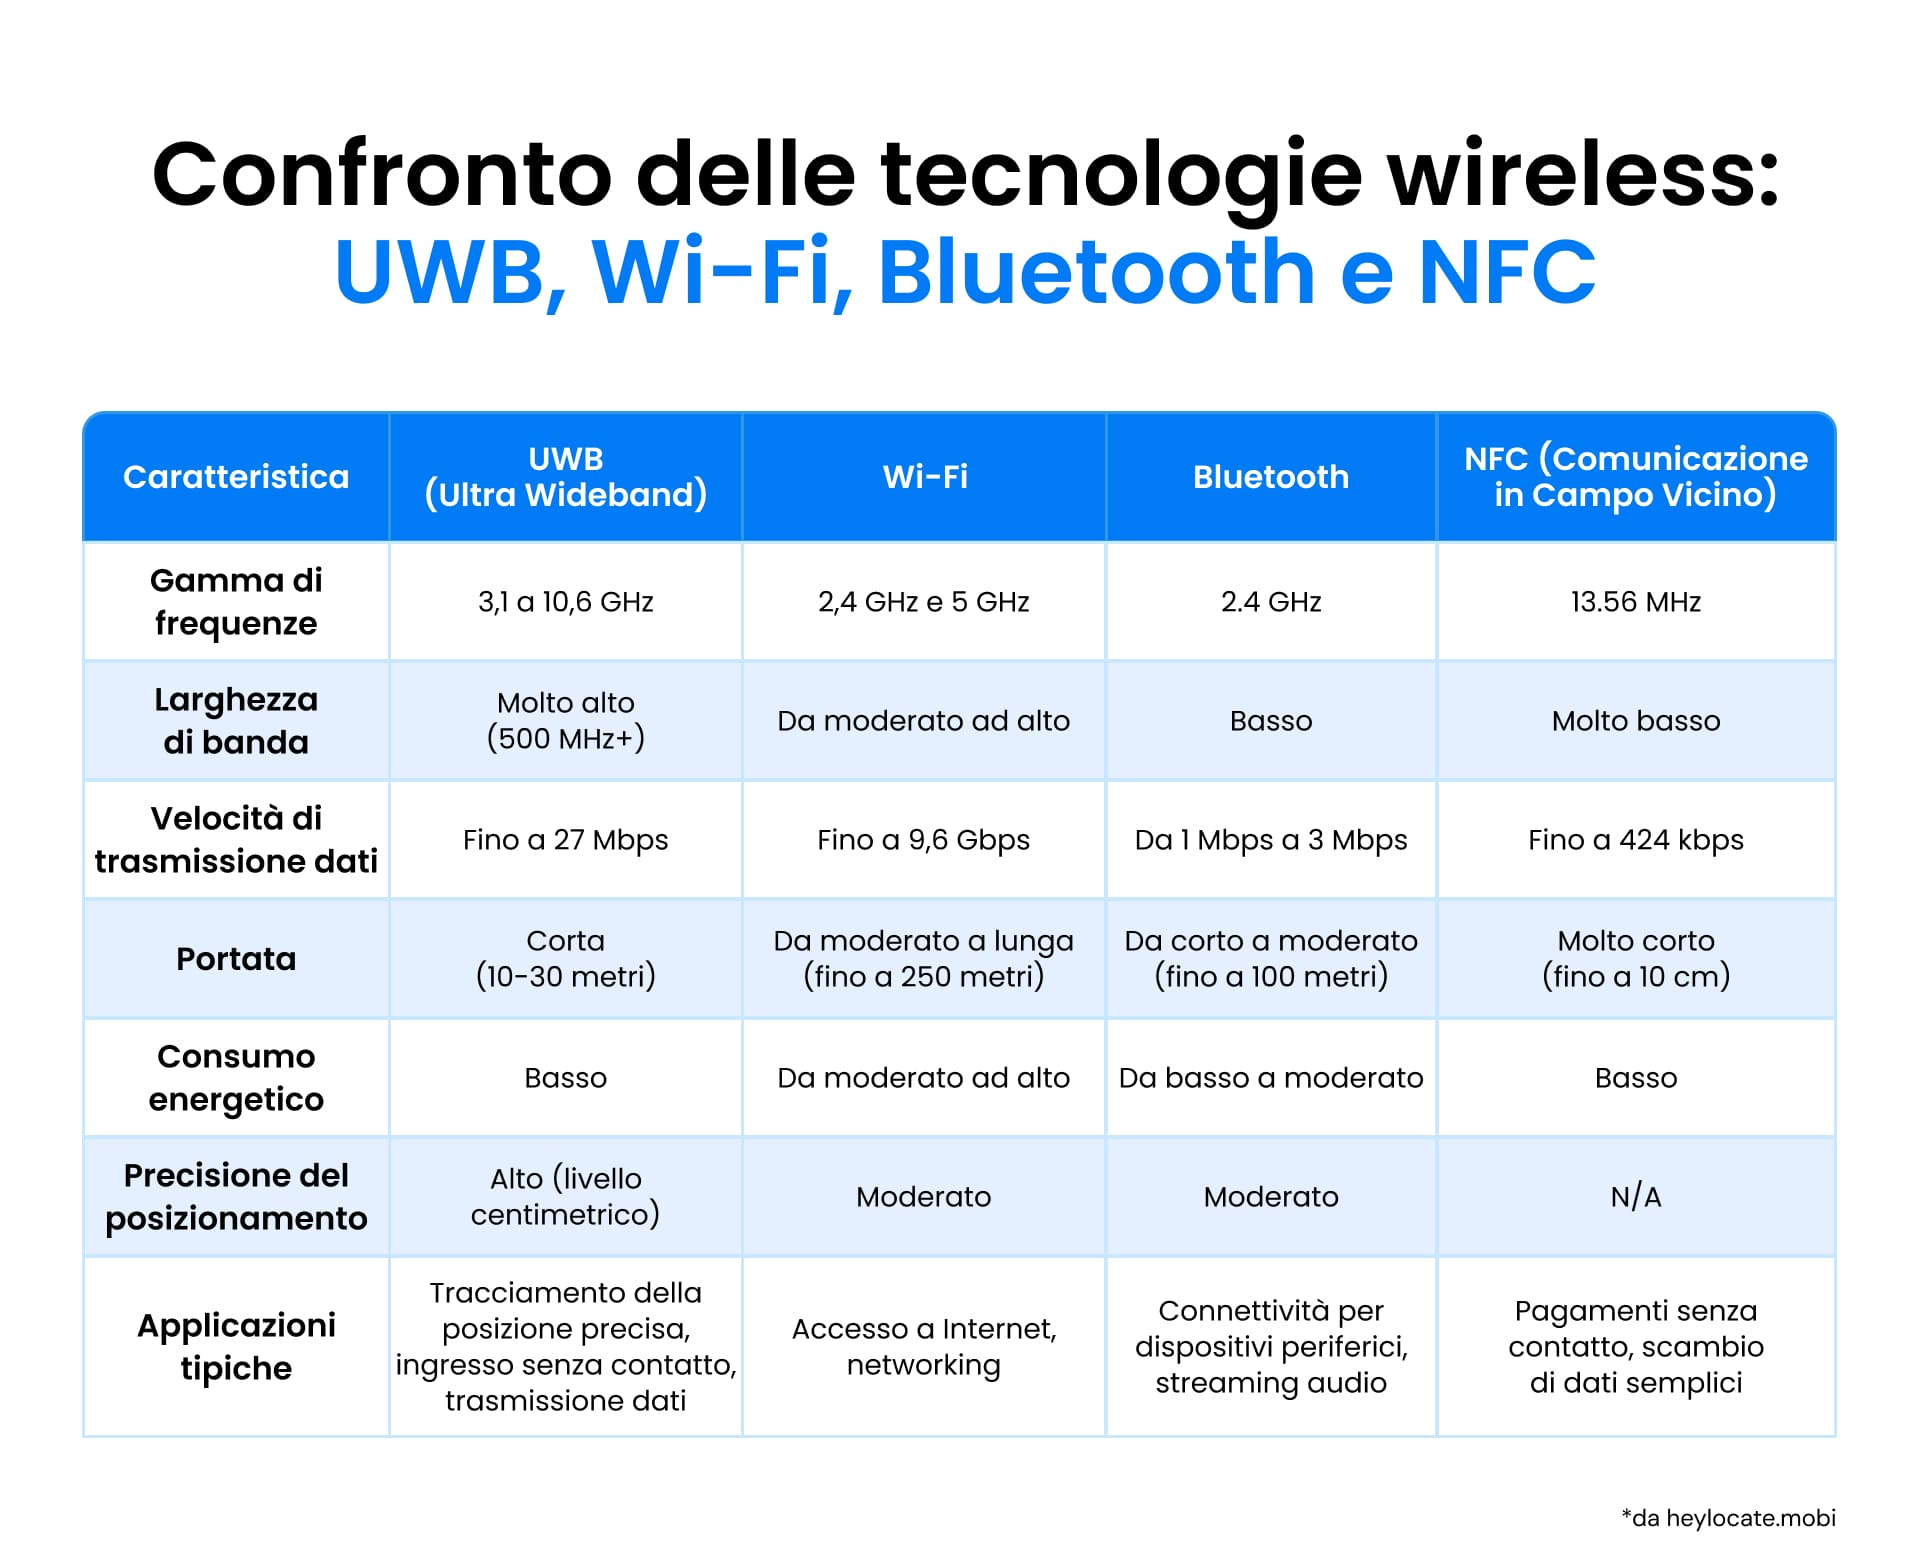 Tabella di confronto tra le tecnologie UWB, Wi-Fi, Bluetooth e NFC per frequenza, larghezza di banda, velocità di trasmissione dati, portata, consumo energetico, precisione di posizionamento e applicazioni.